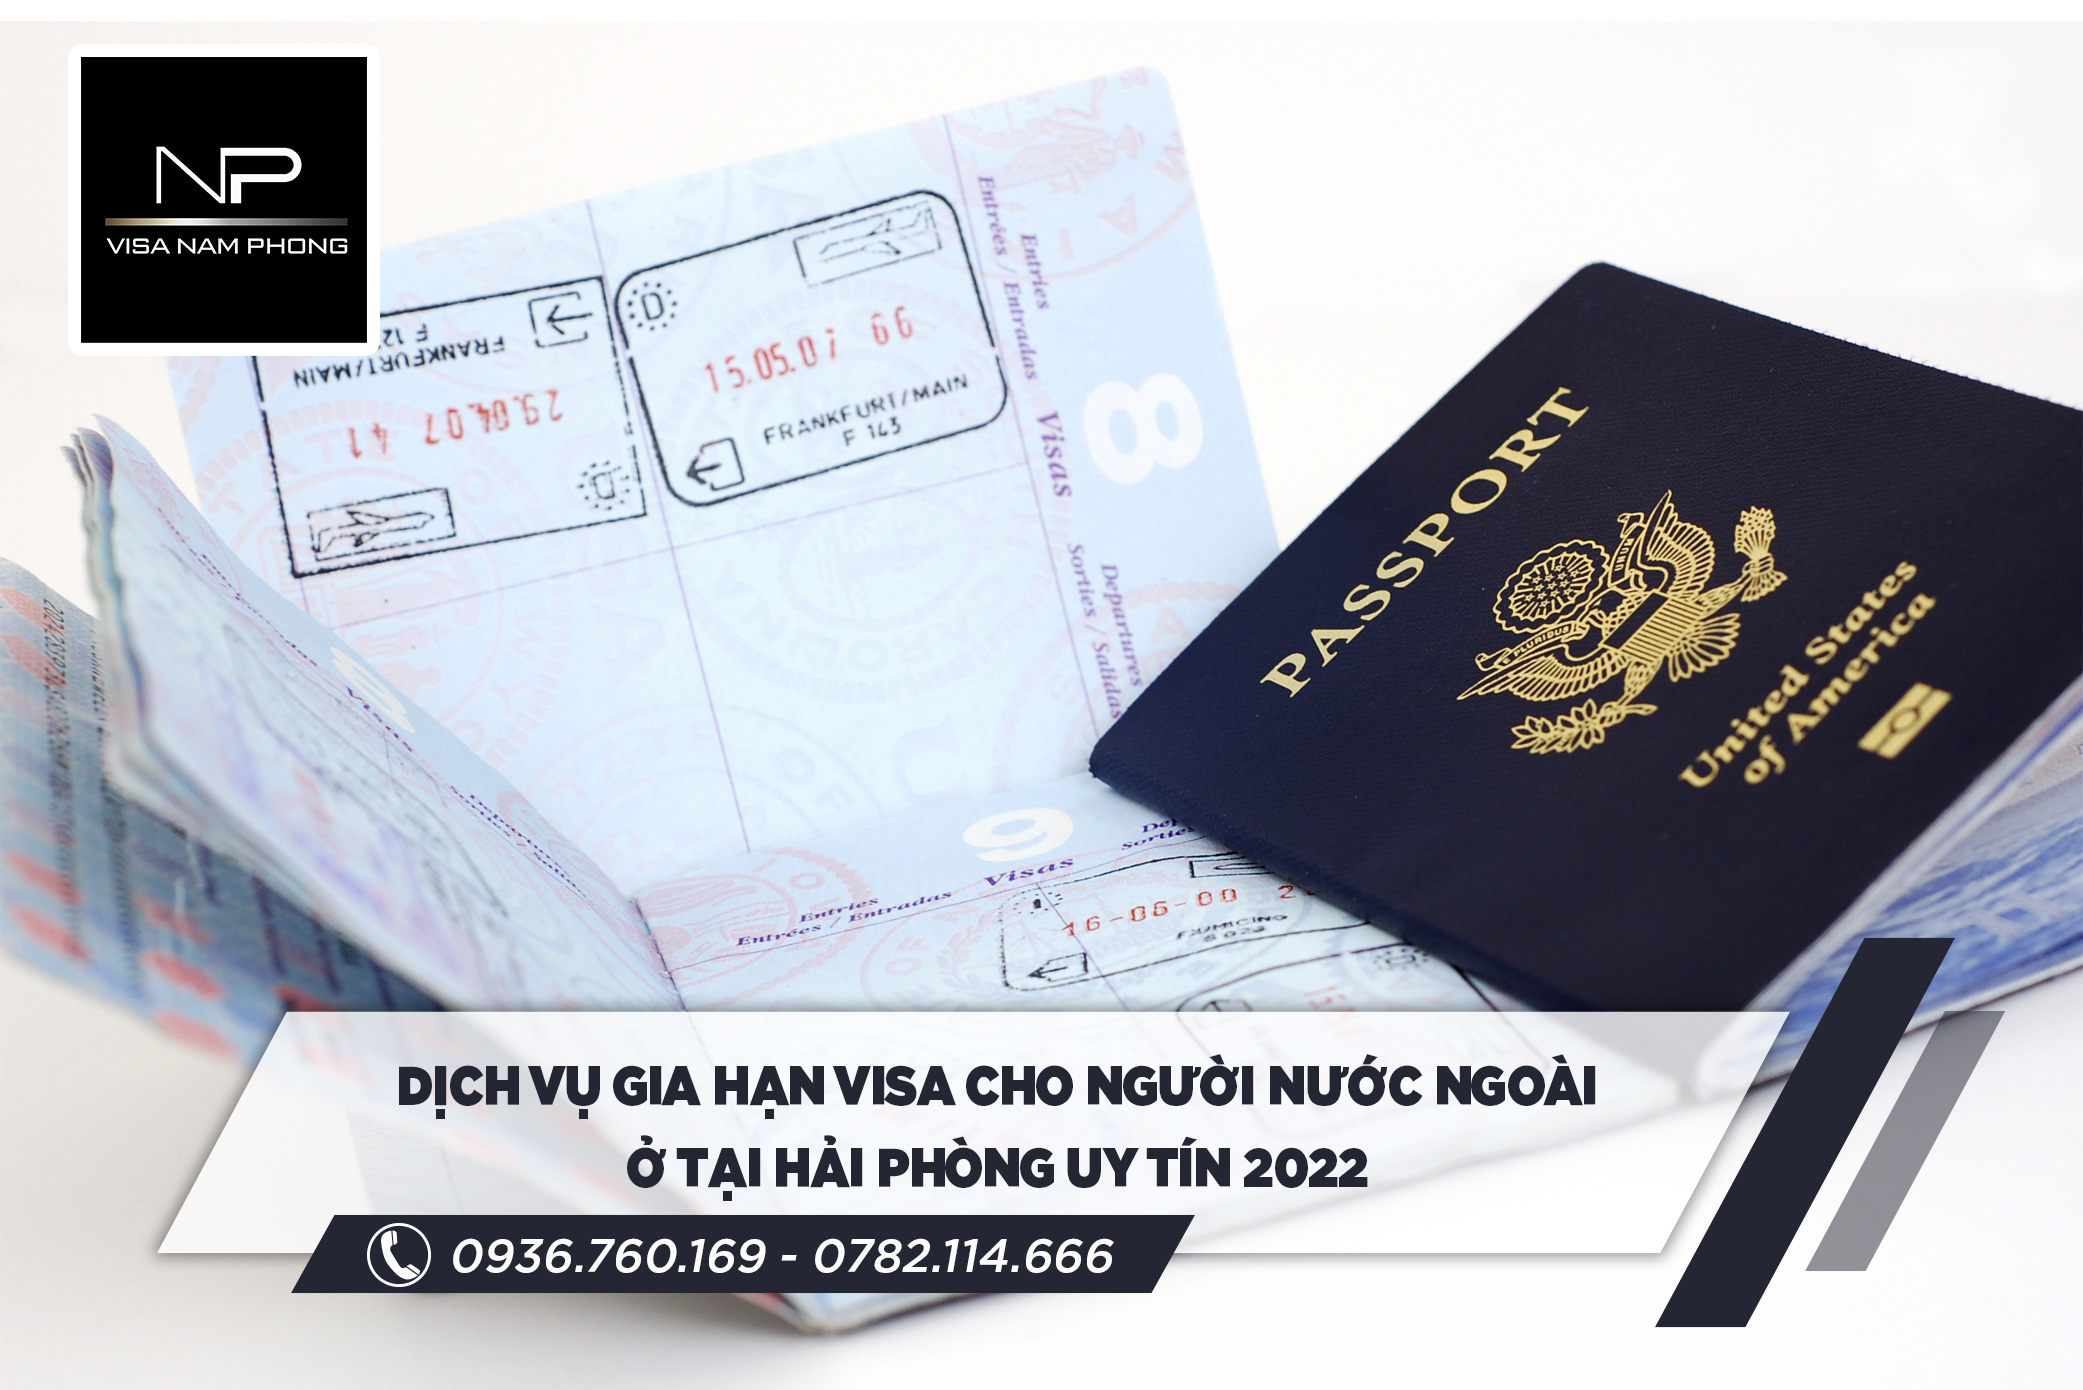 Dịch vụ gia hạn visa cho người nước ngoài ở tại Hải Phòng uy tín 2022